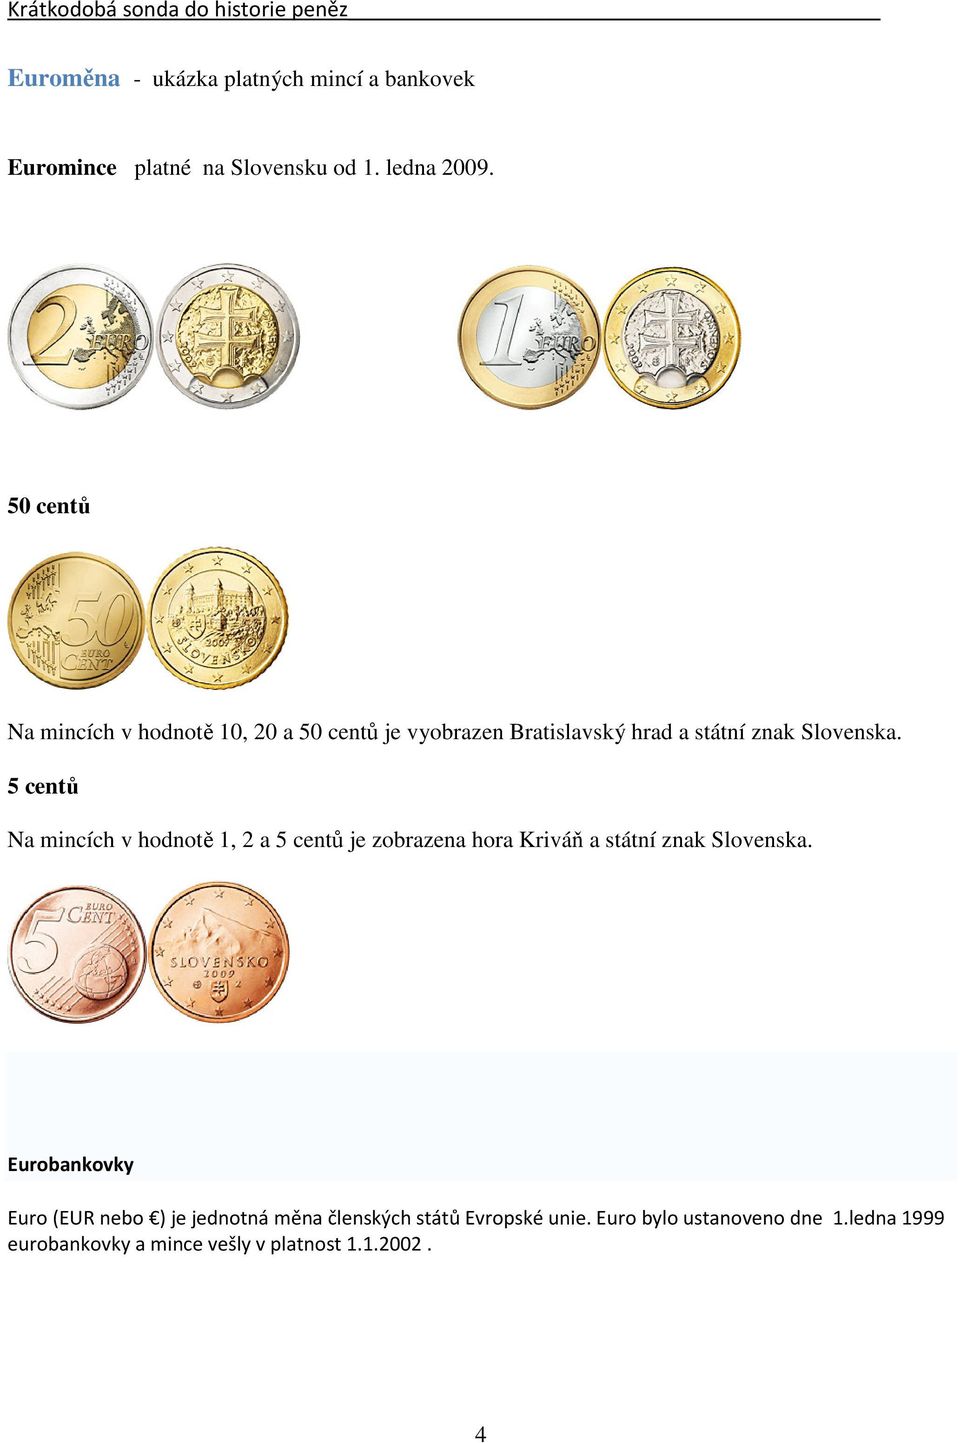 5 centů Na mincích v hodnotě 1, 2 a 5 centů je zobrazena hora Kriváň a státní znak Slovenska.